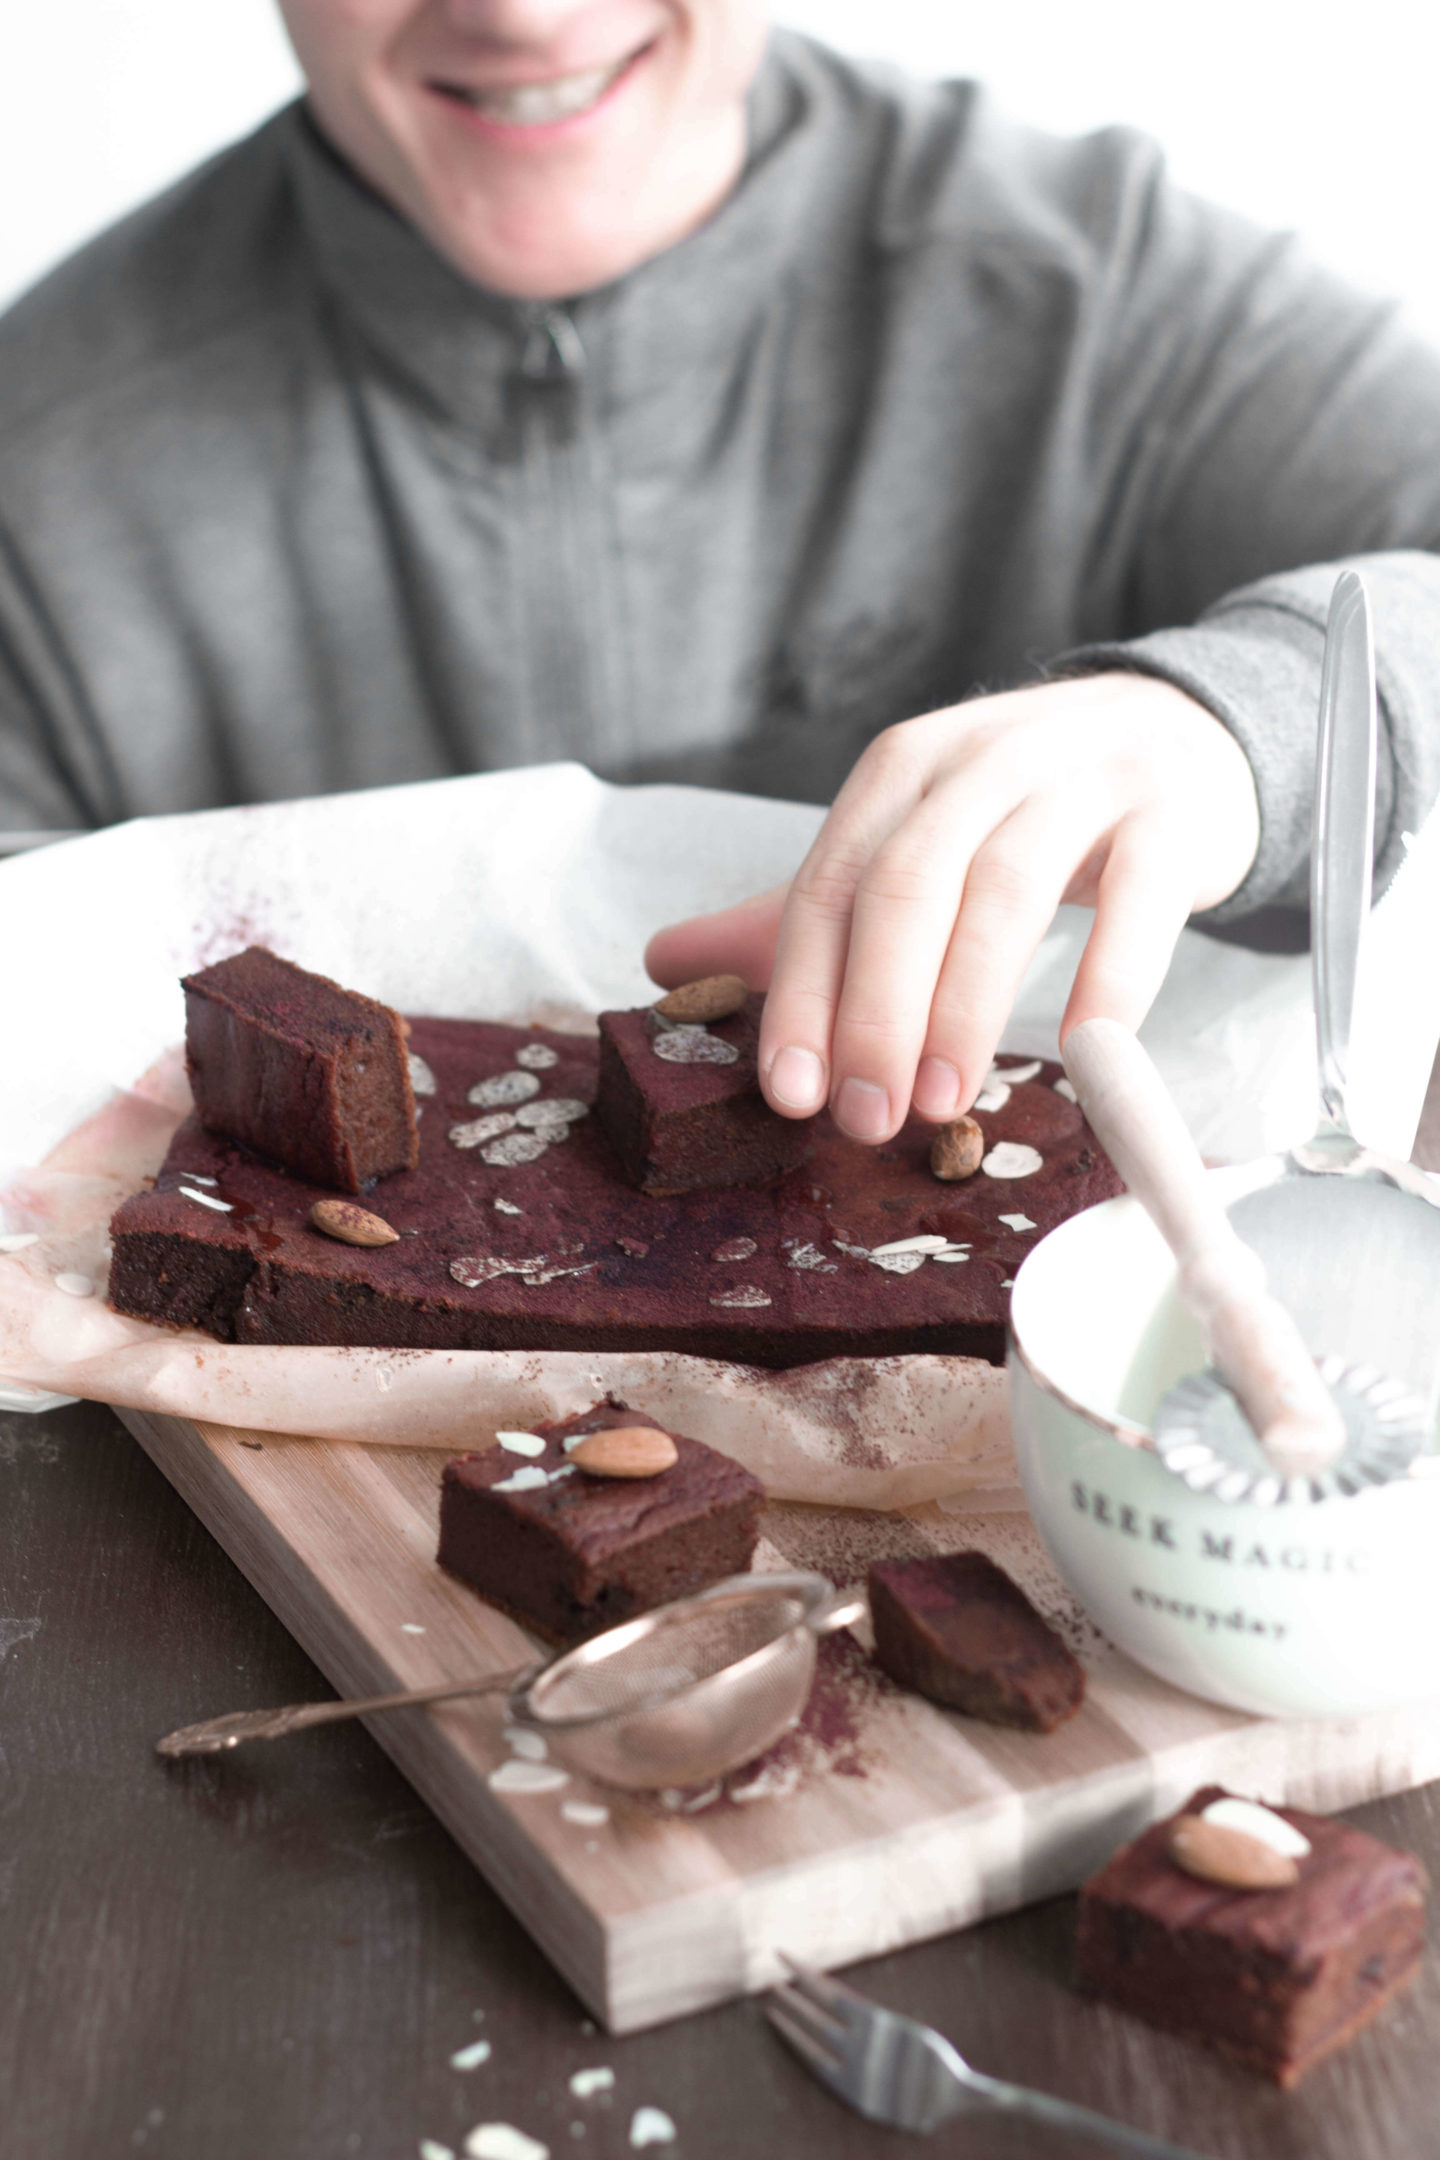 Rote Beete Schokoladekuchen-Glutenfrei- Vegan- Soulfood-Wohlfühlen-Dein HomeSpa- Food & Wohlfühlblog aus dem Mostviertel